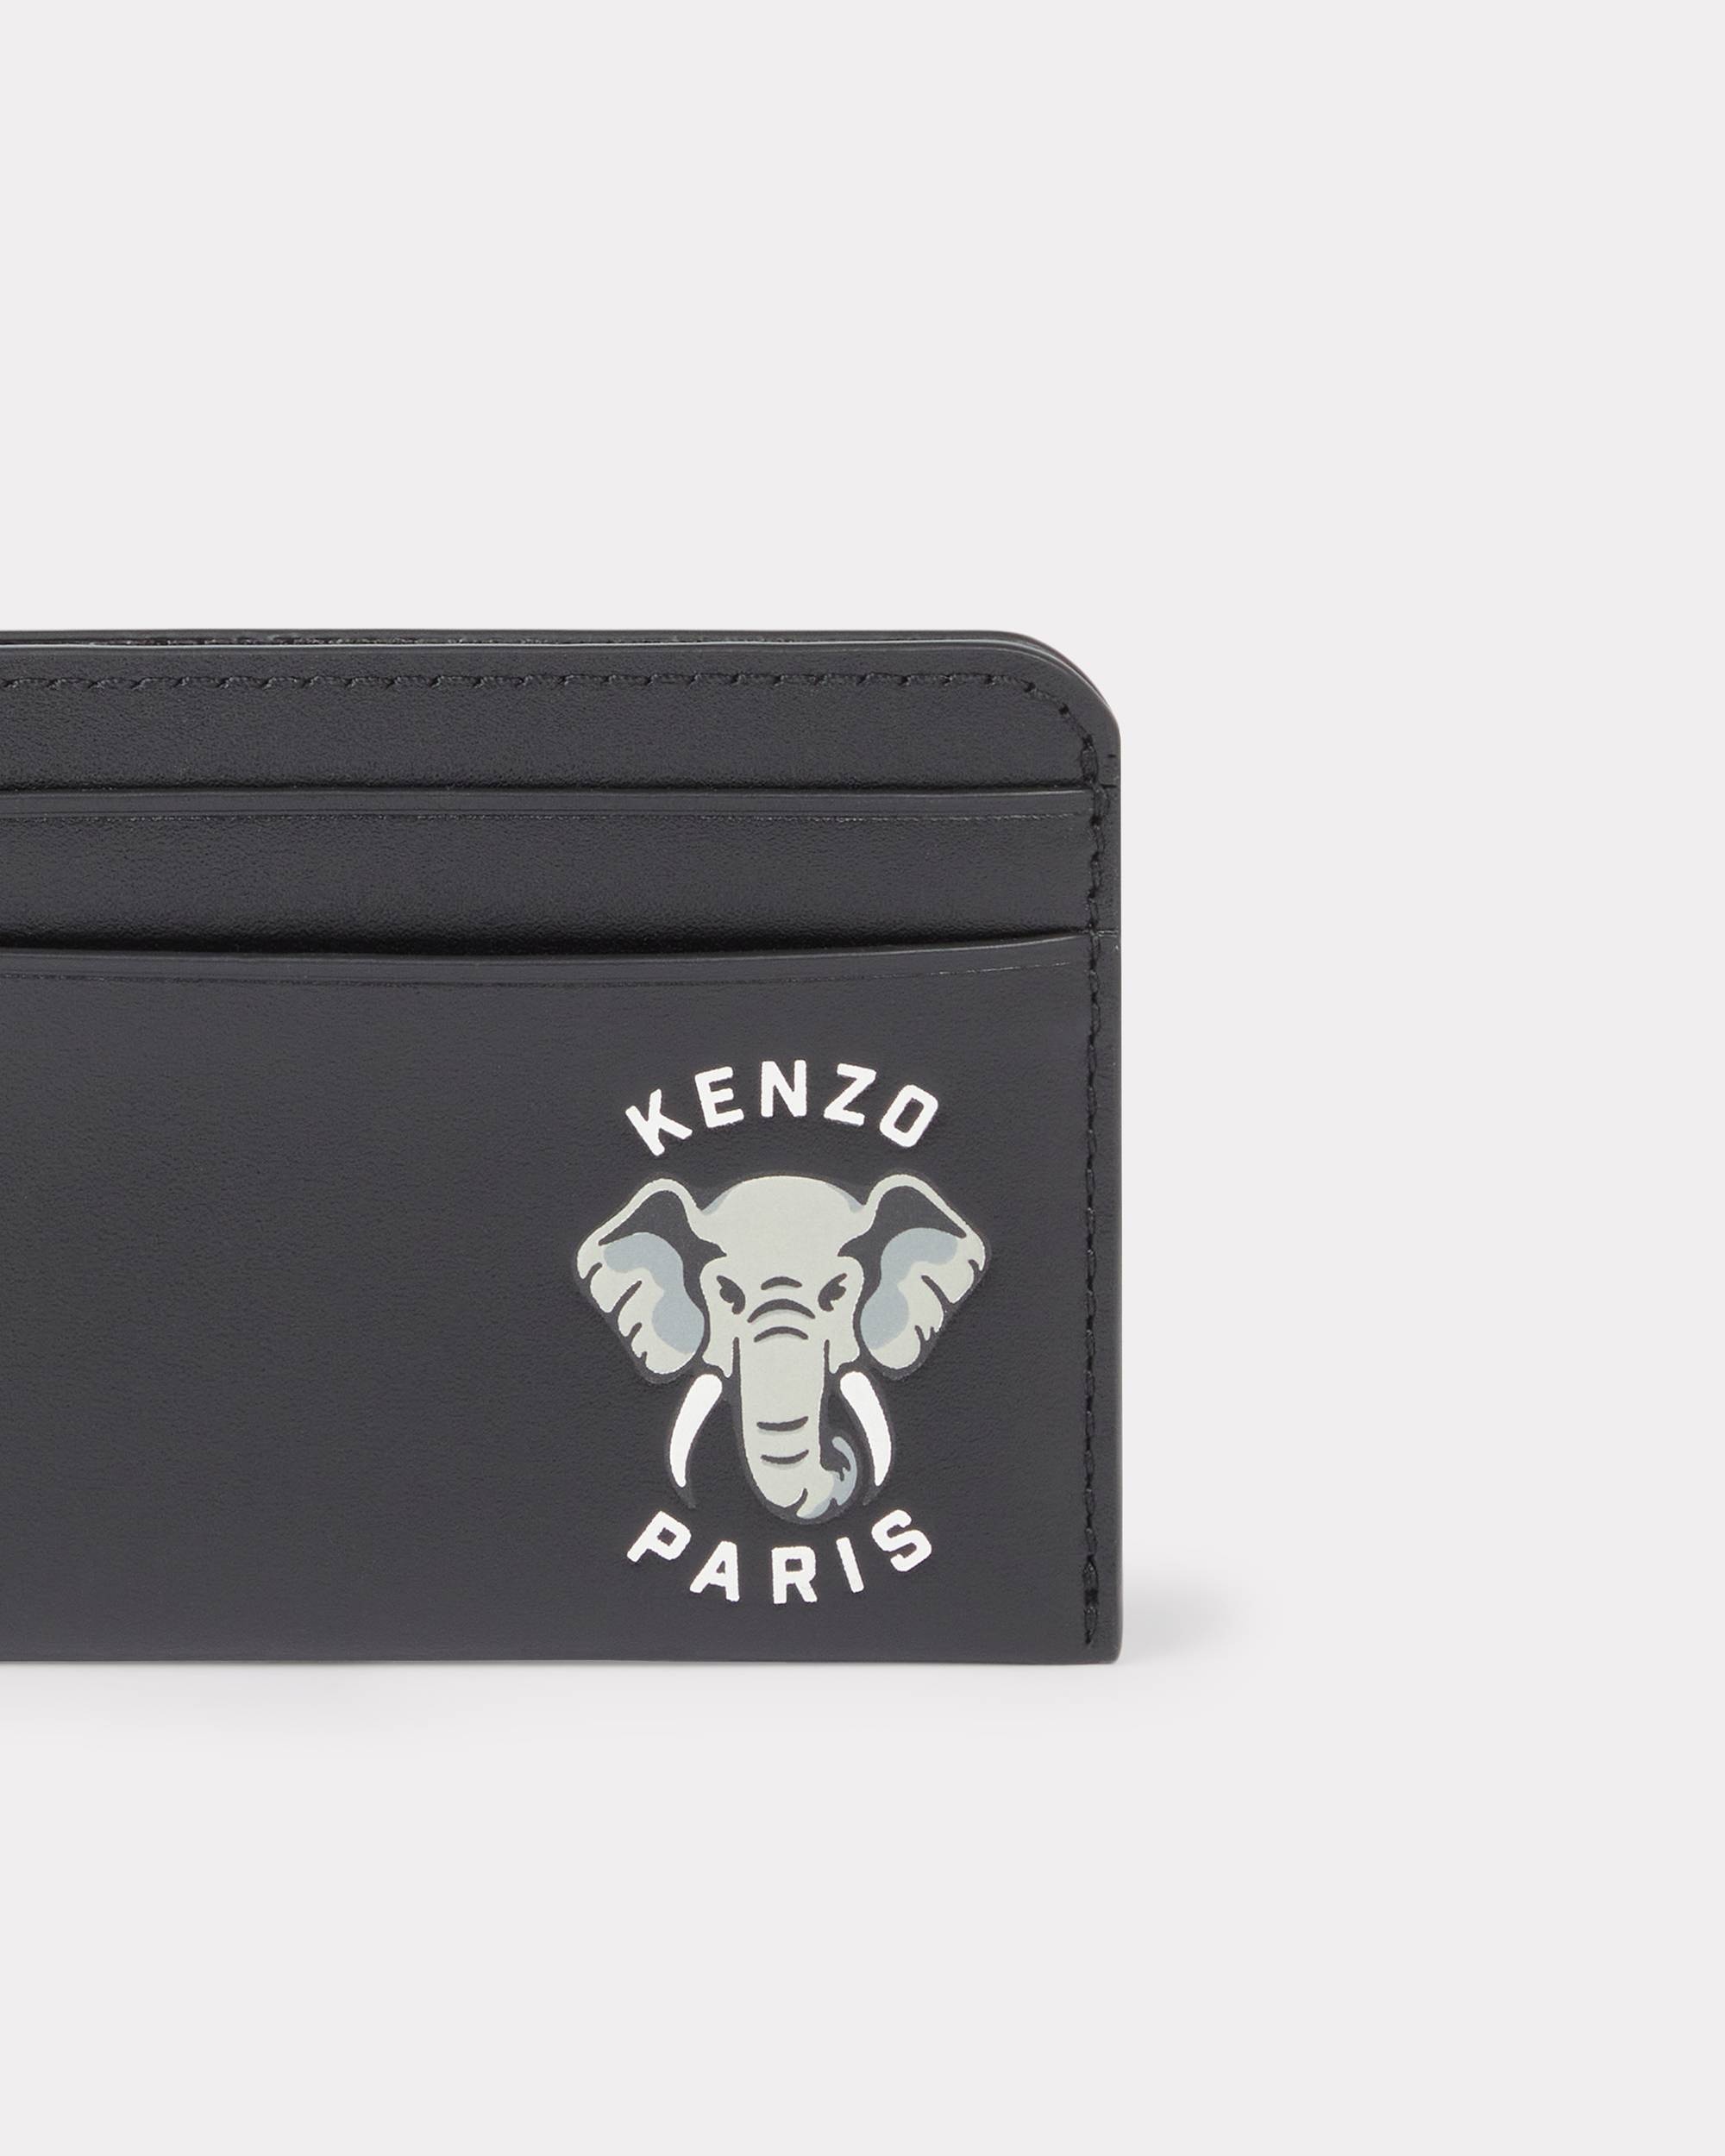 'KENZO Varsity' leather card holder - 3